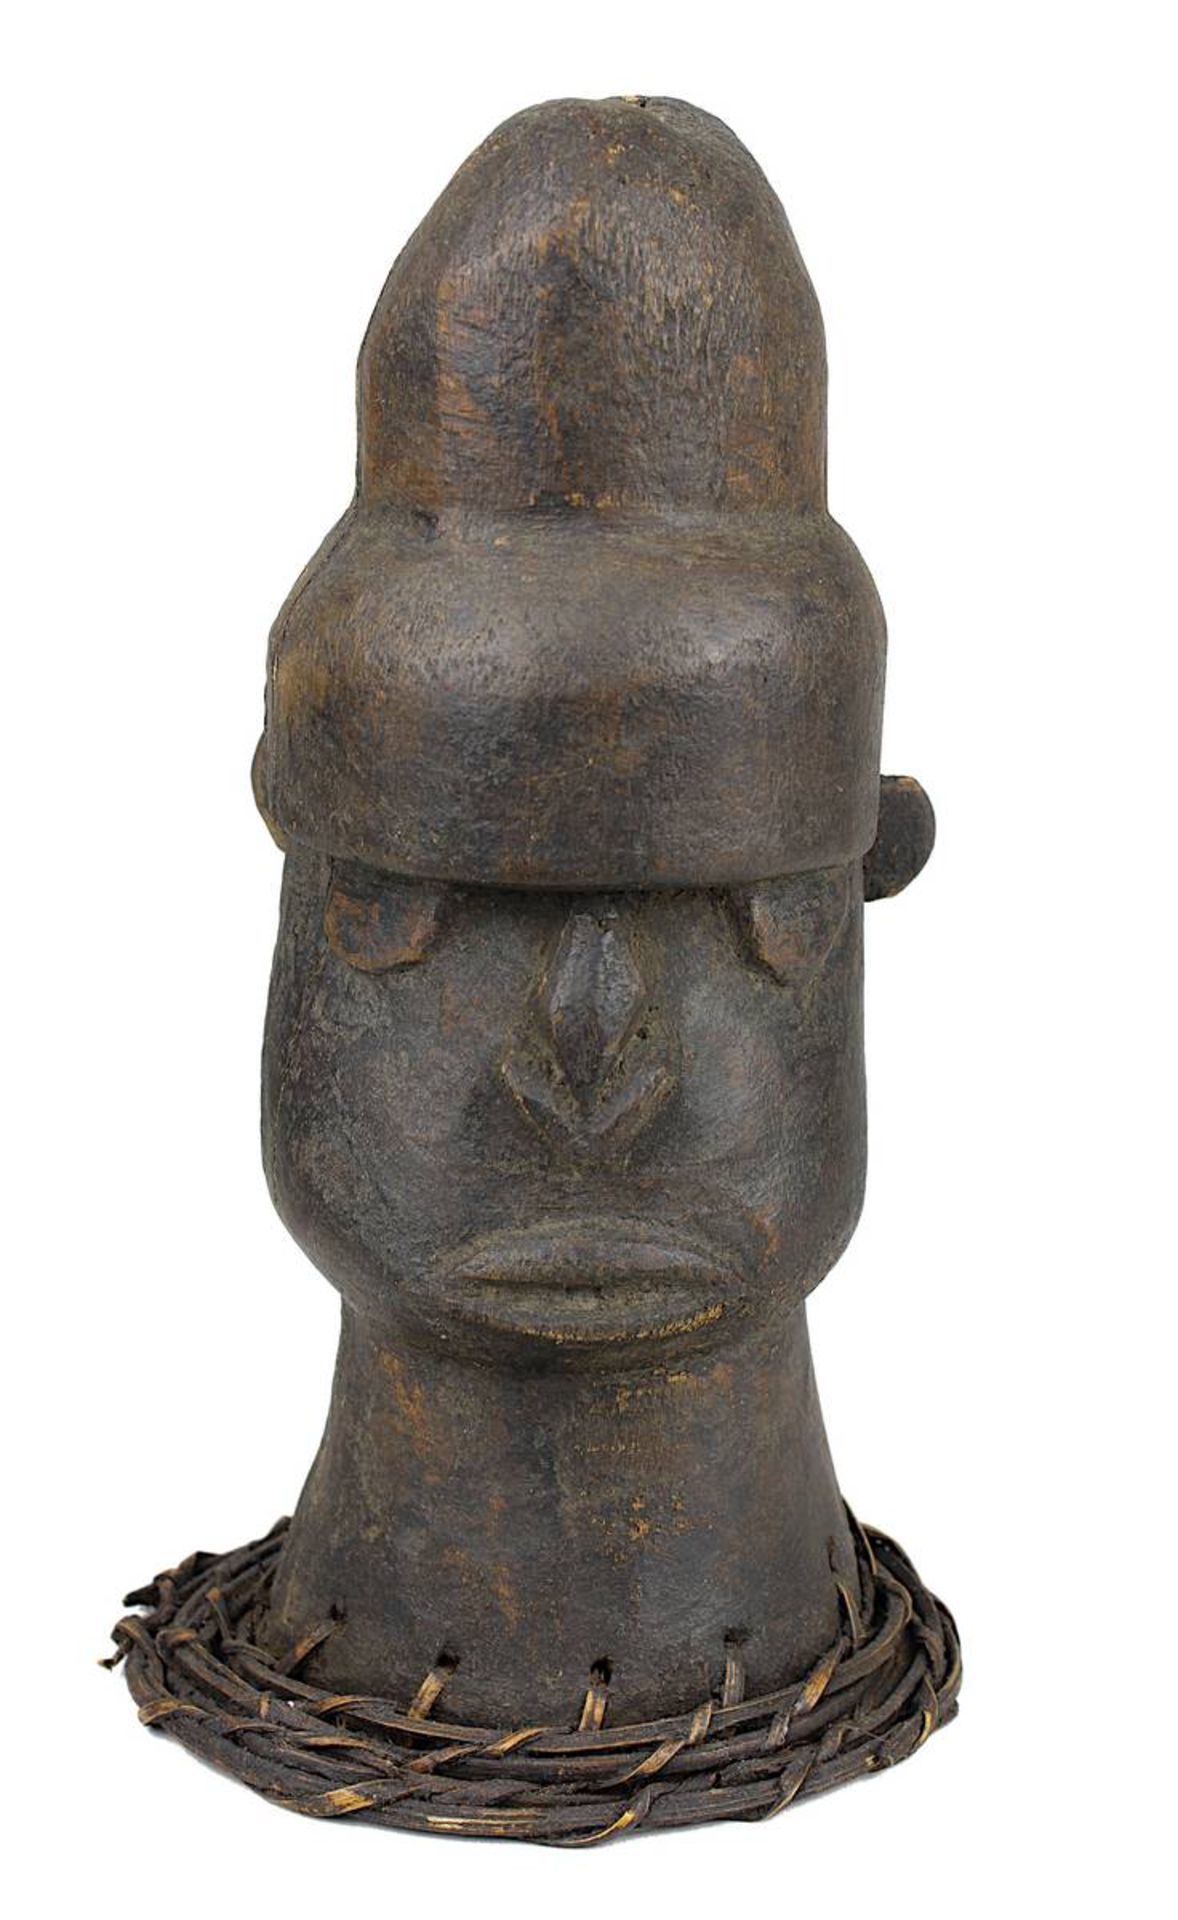 Tanzaufsatz in Form eines anthropomorphen Kopfes, wohl Igbo, Nigeria, Holz geschnitzt und dunkel gef